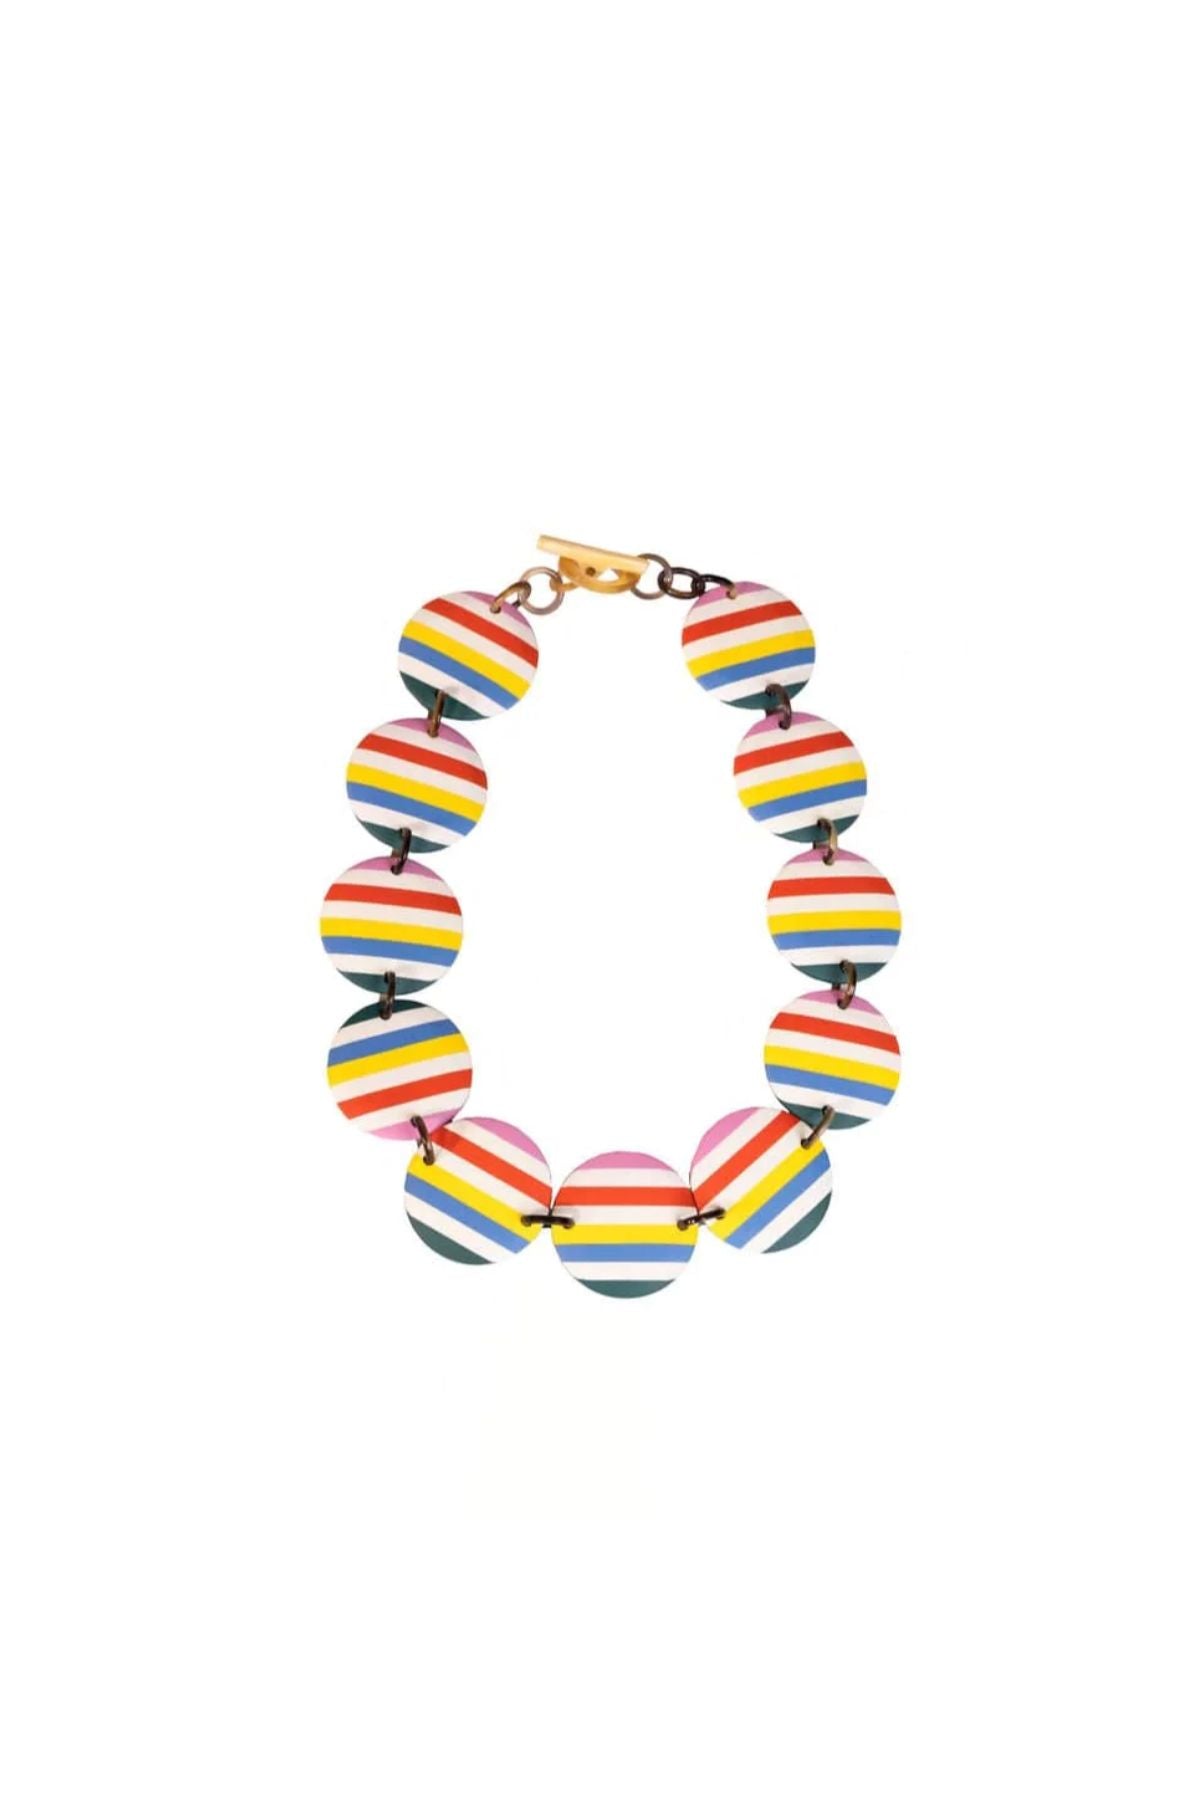 Multi-colored striped necklace